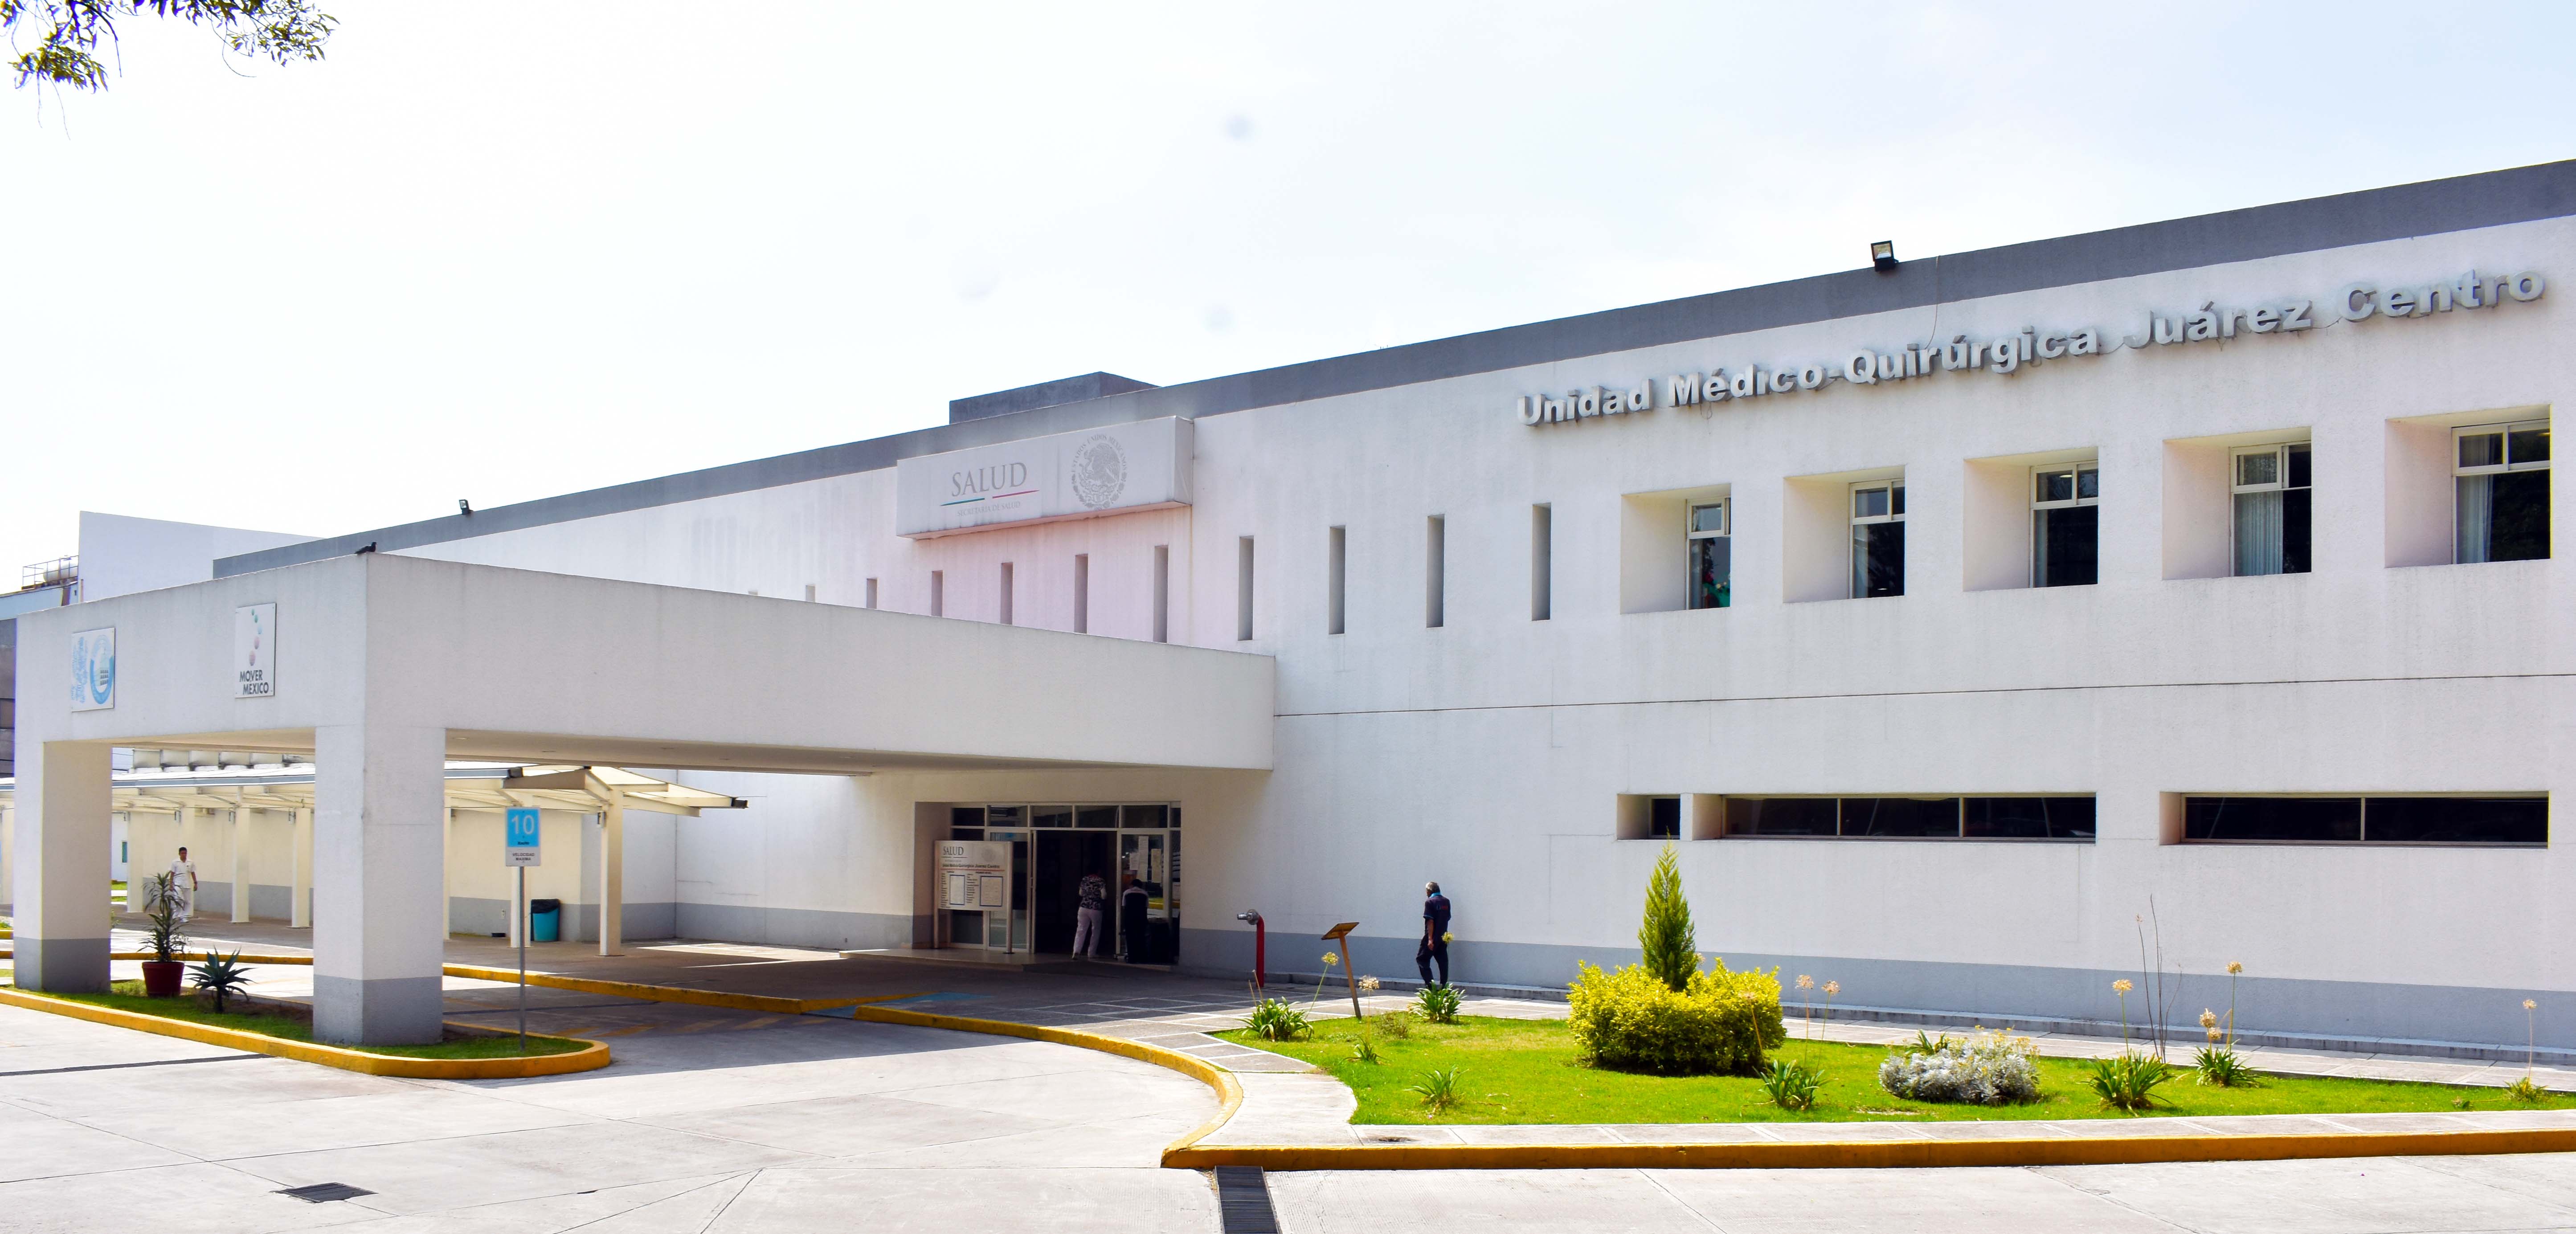 Fachada de la Unidad Quirúrgica del Hospital Juárez Centro.